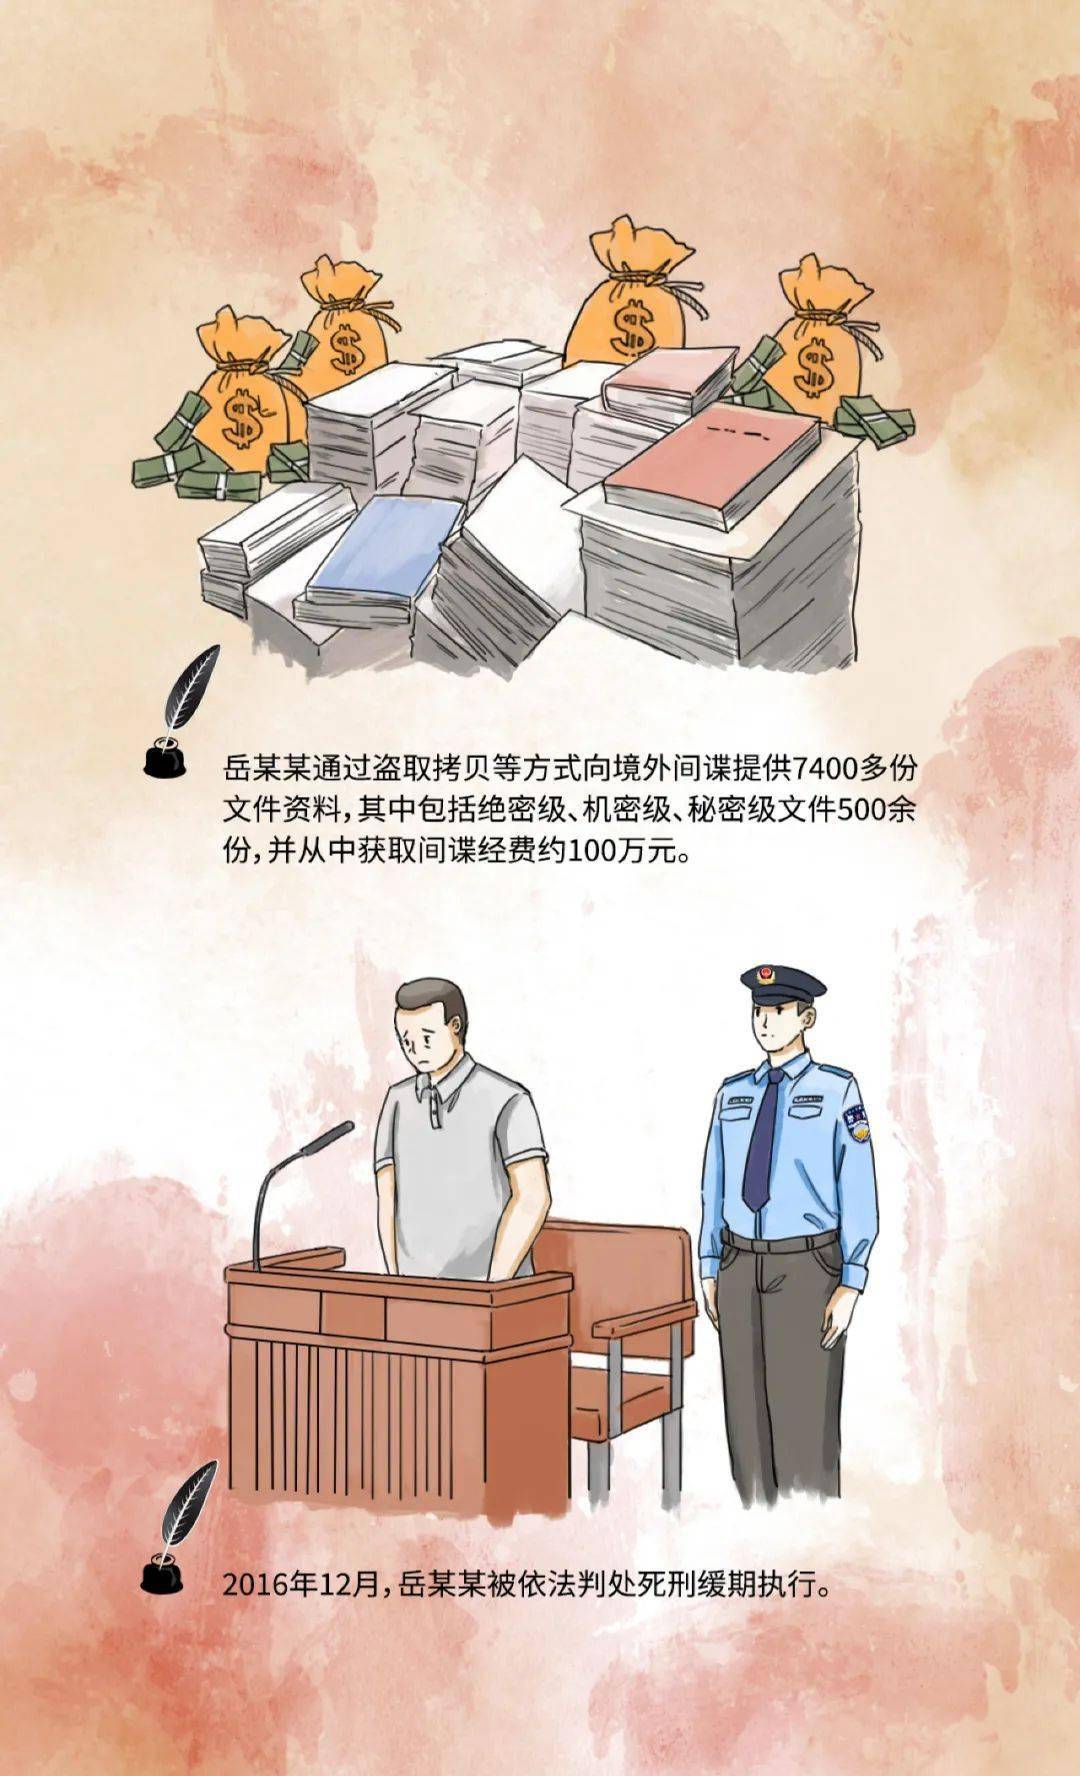 《中华人民共和国反间谍法》颁布实施六周年系列案例(三)